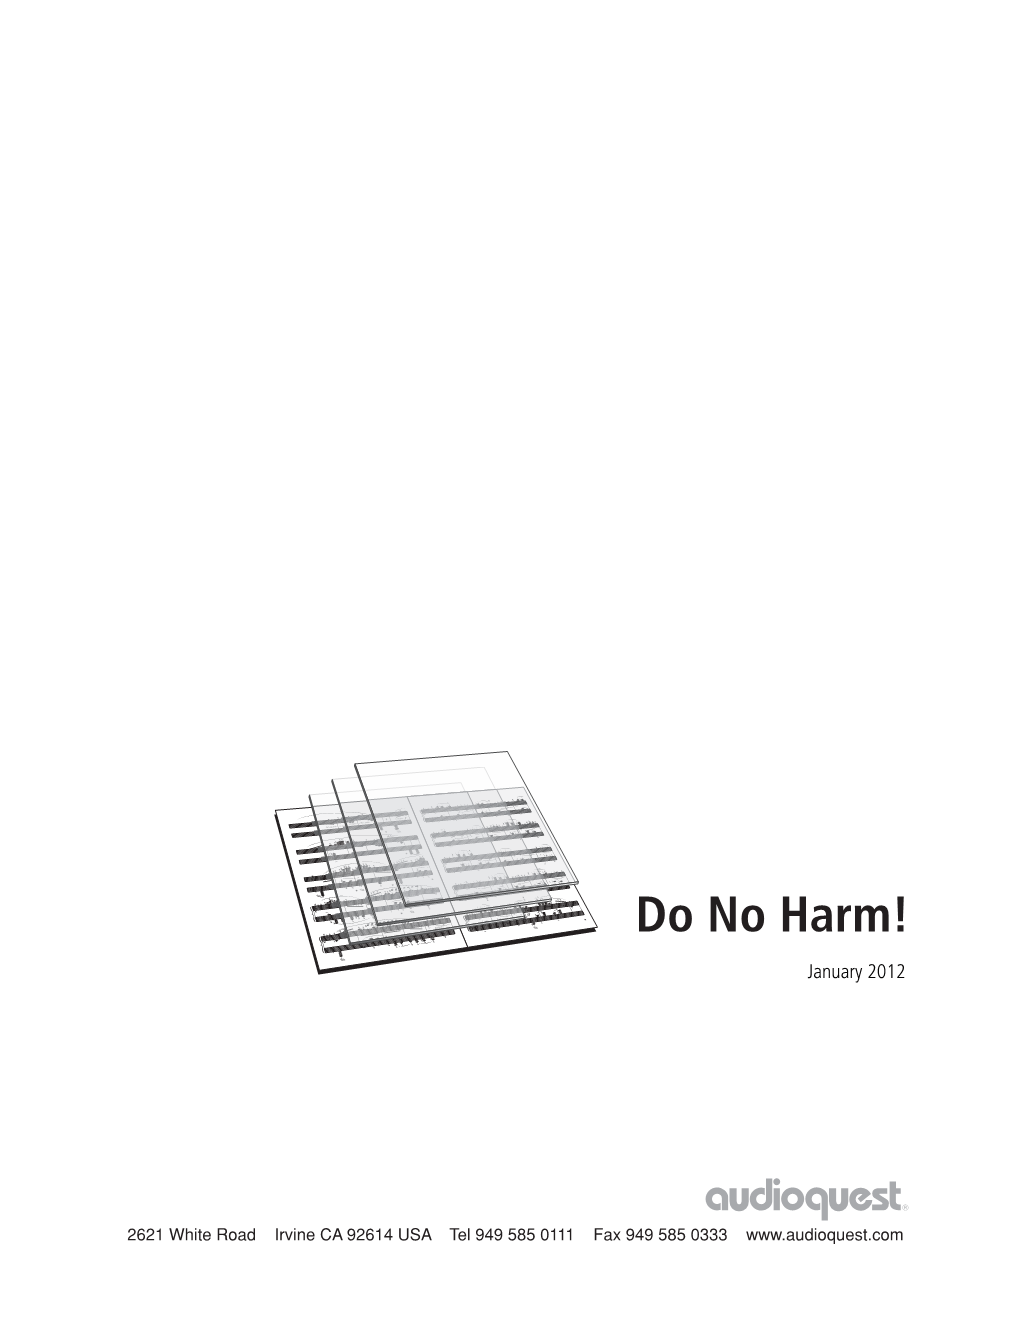 Do No Harm! January 2012